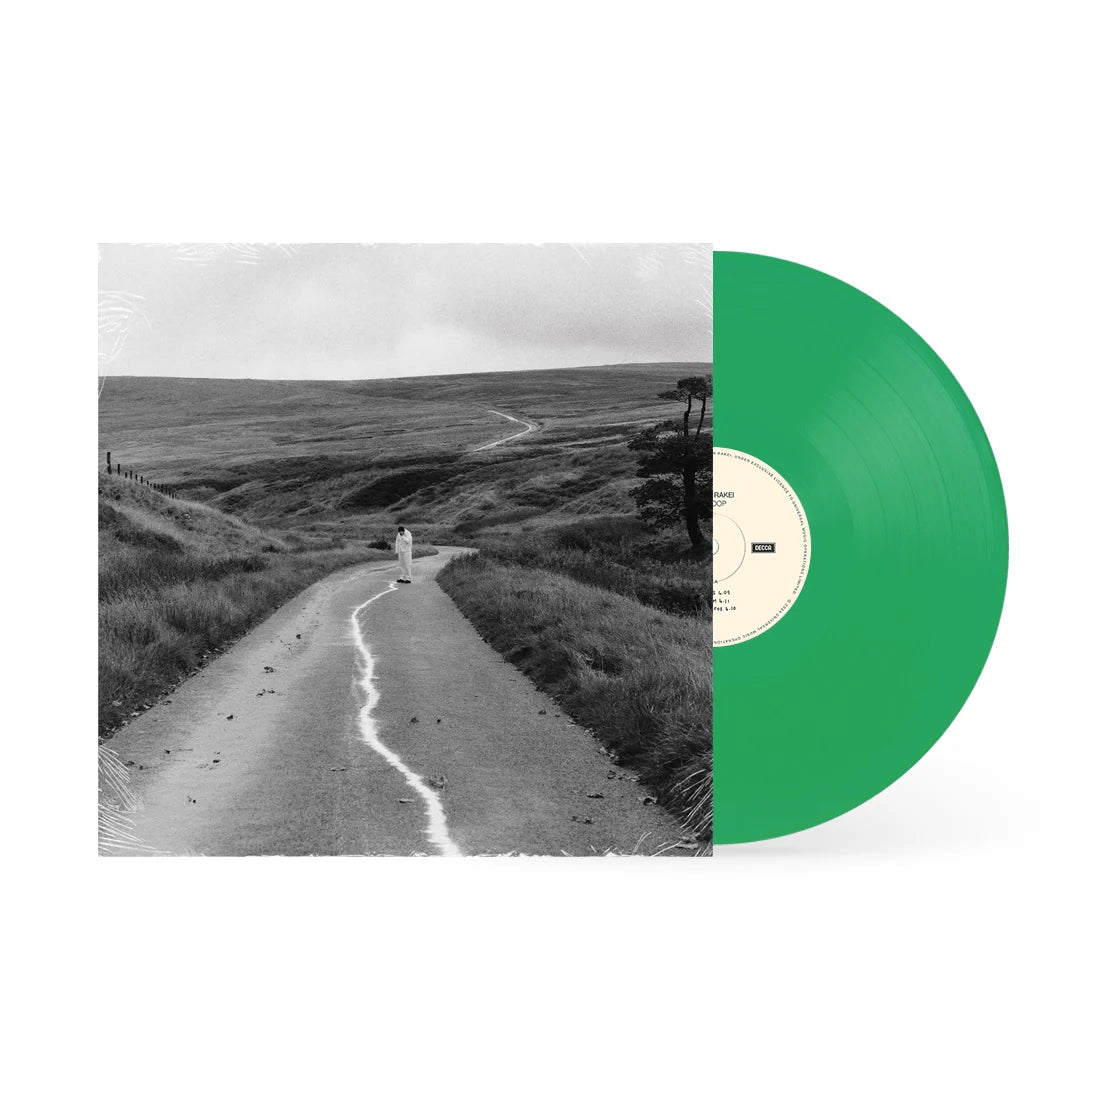 Jordan Rakei – The Loop LP (Limited Edition Indie Exclusive Green Vinyl)